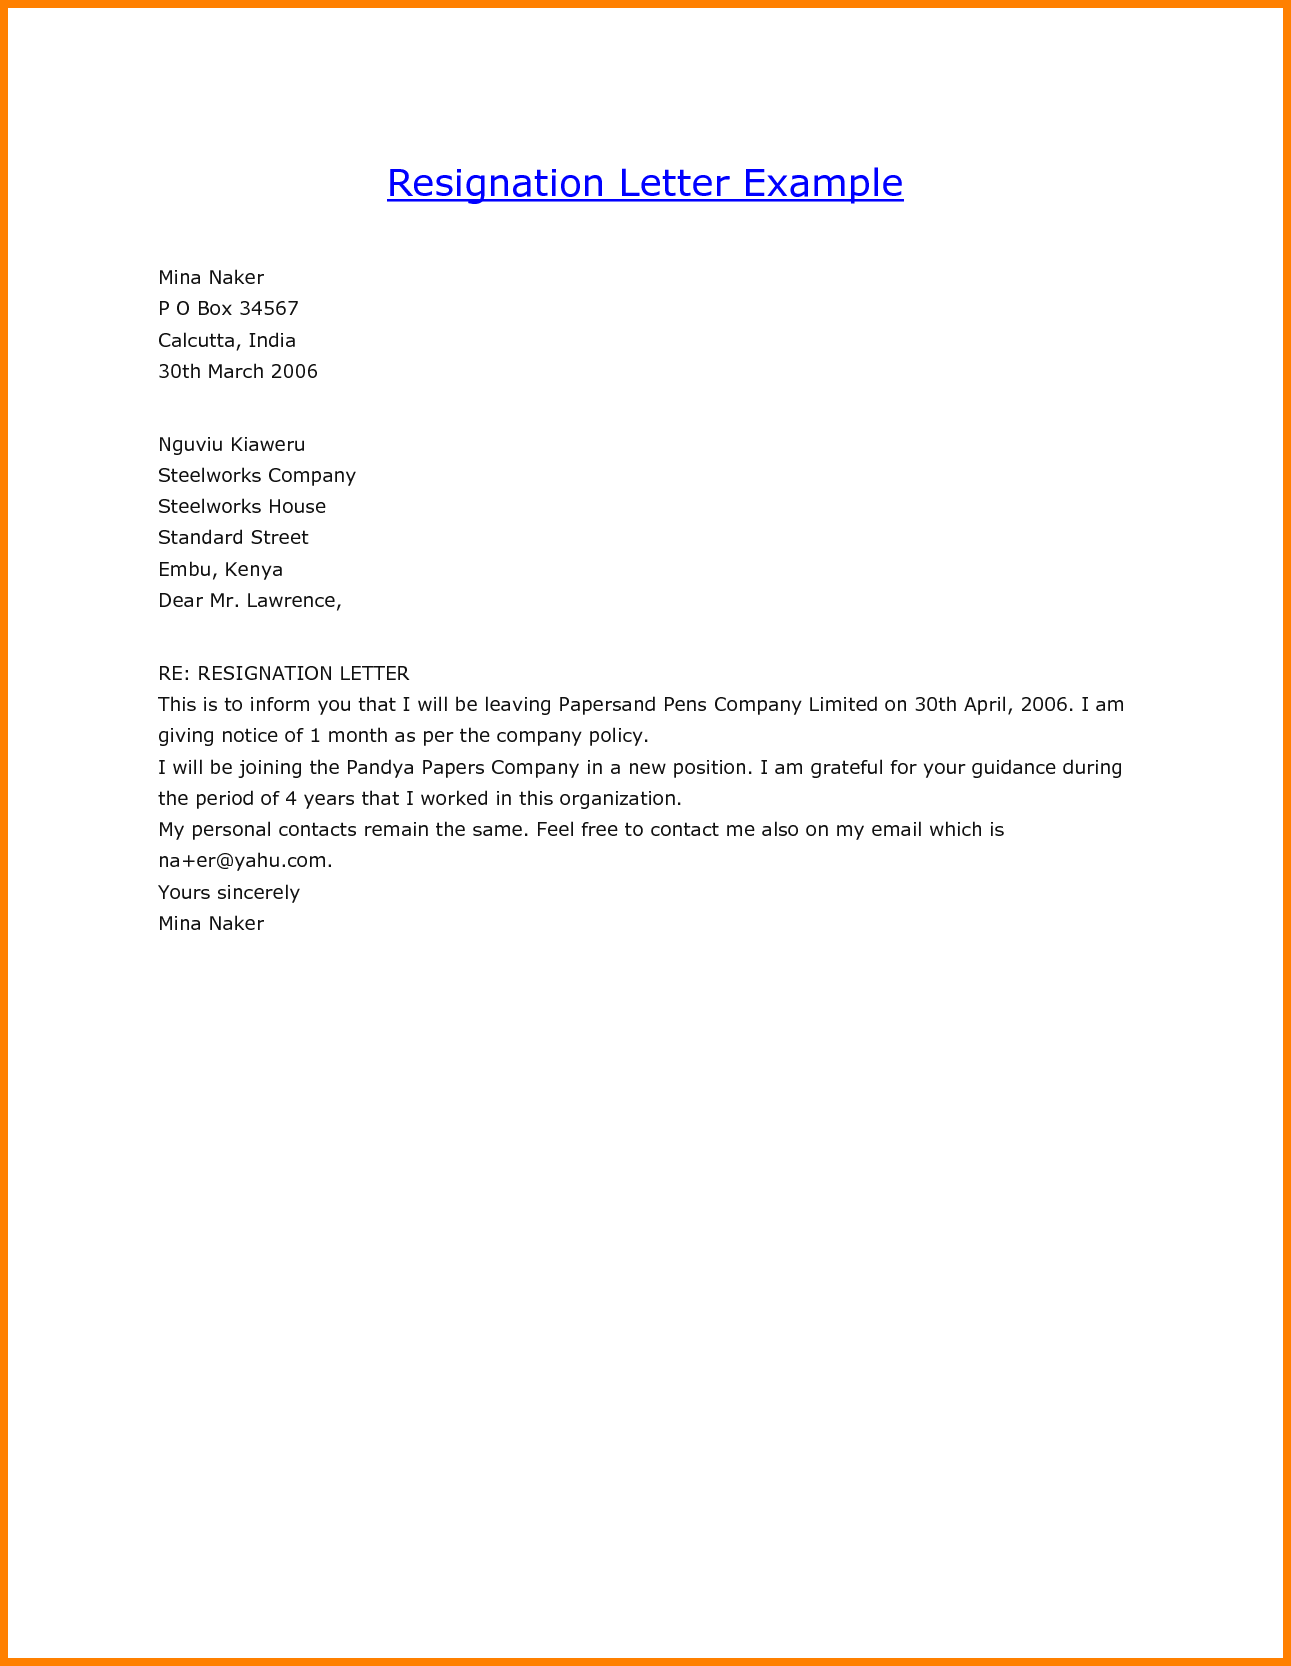 resign-letter-sample-80518536